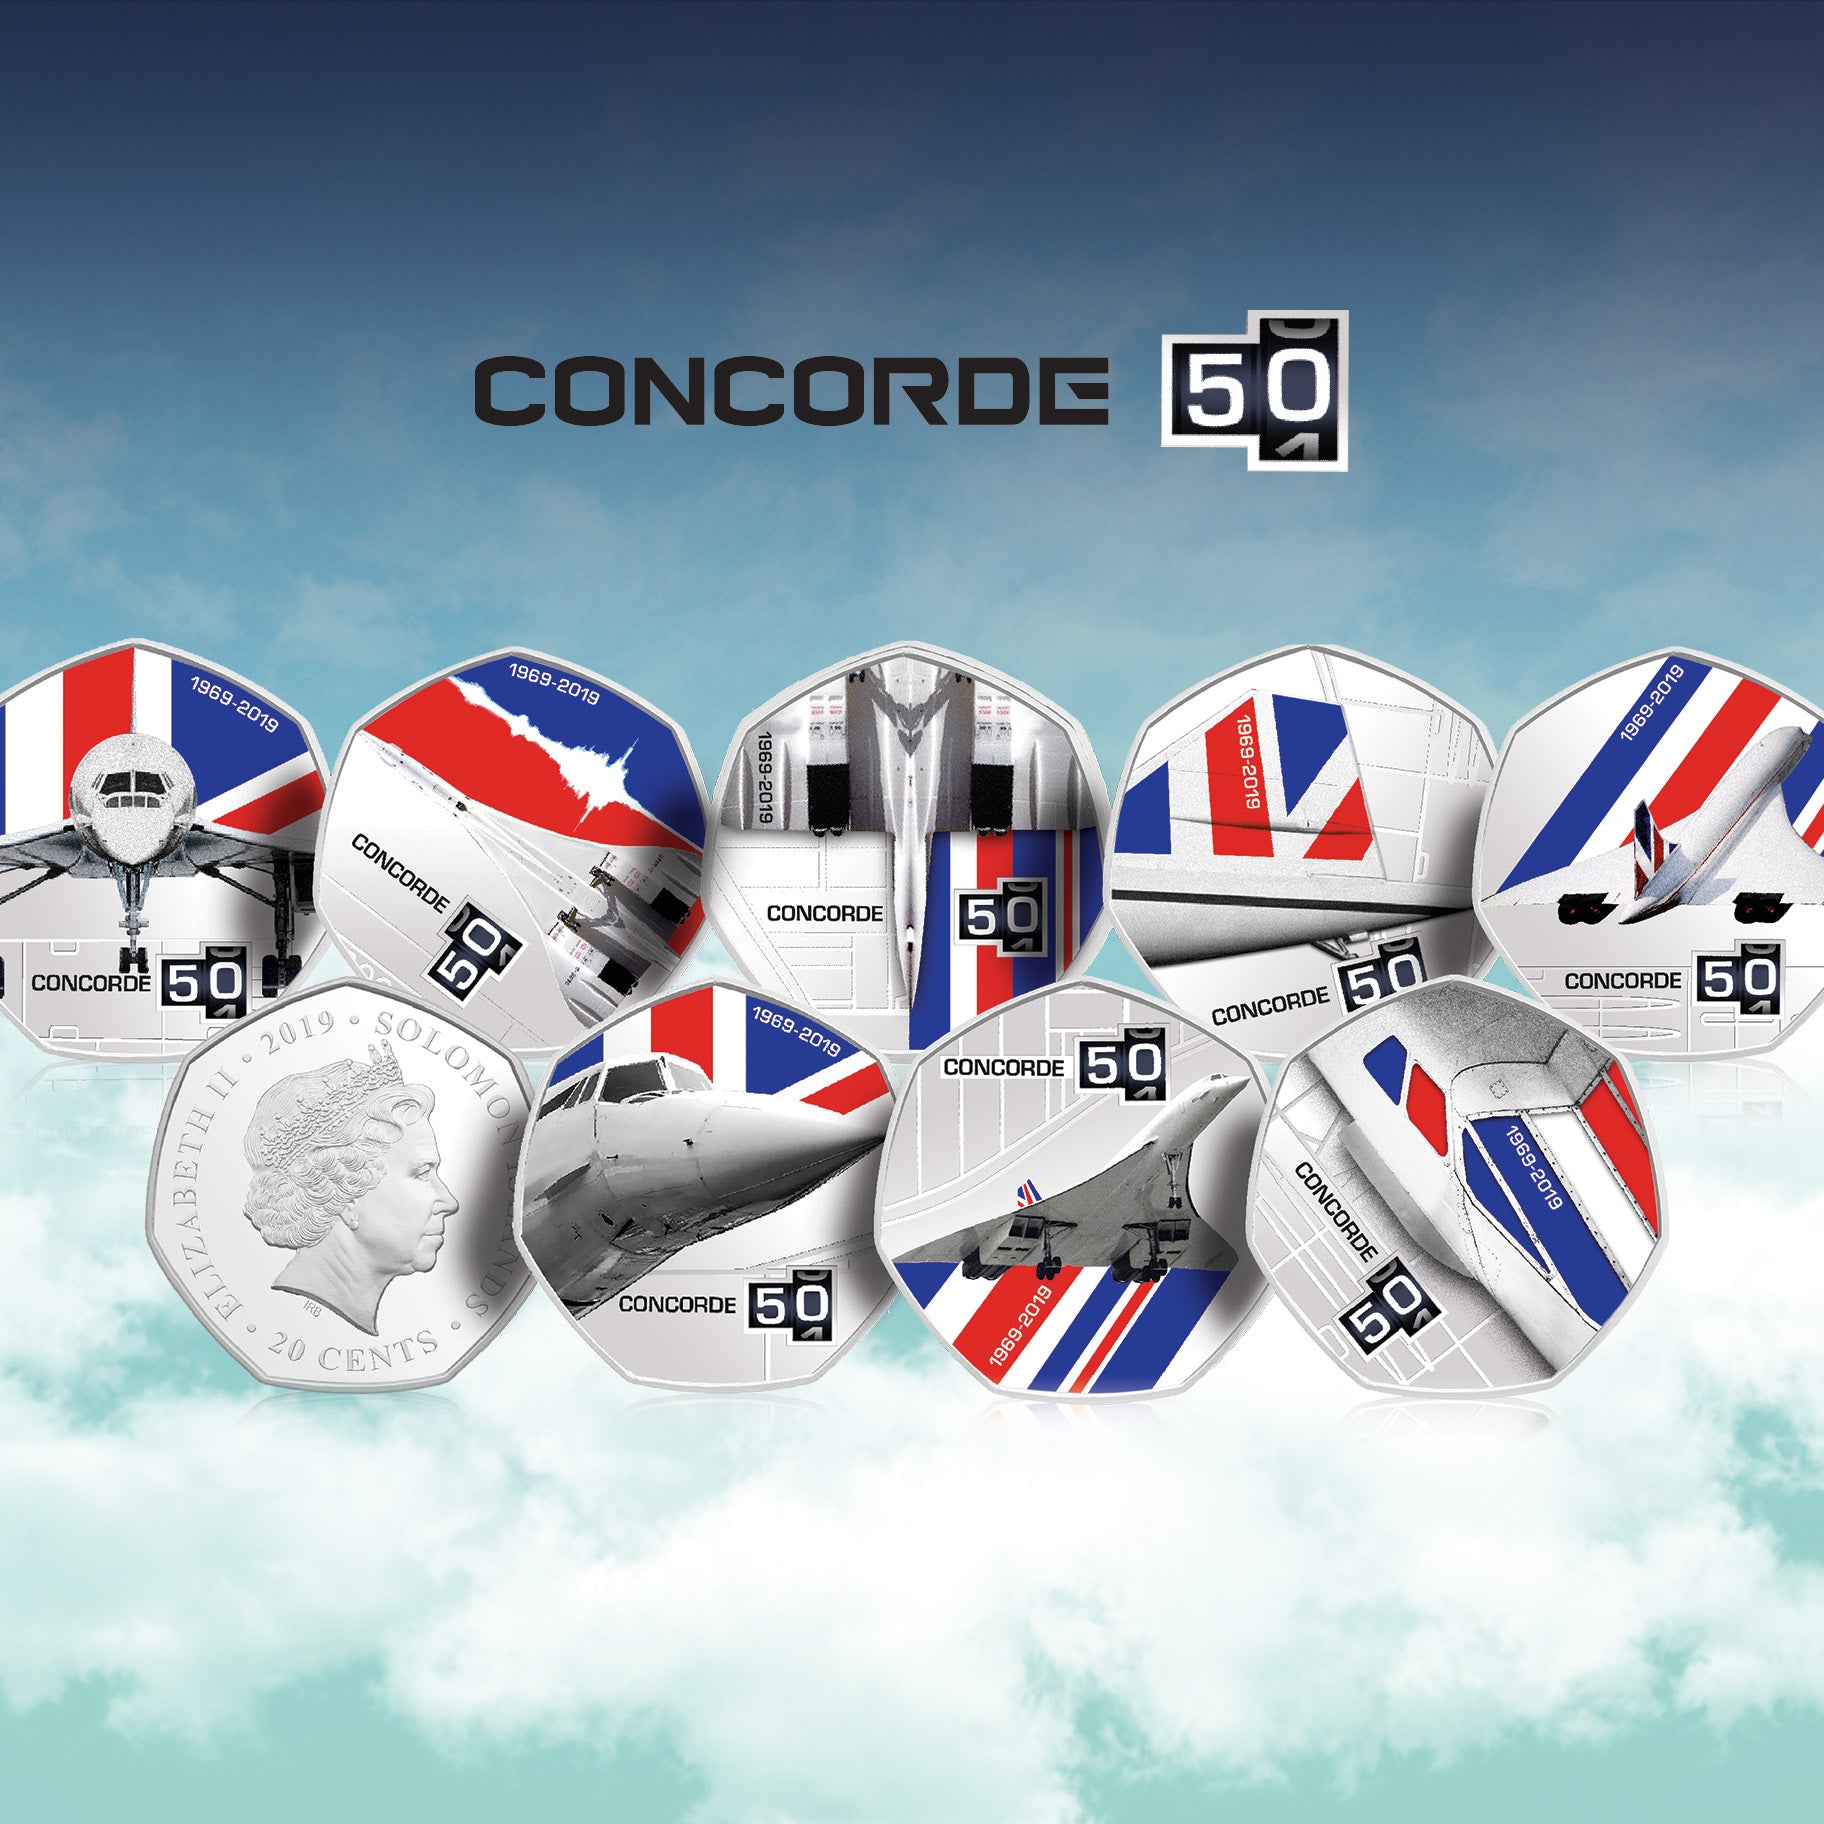 Collection complète de pièces de monnaie BU du 50e anniversaire de Concorde